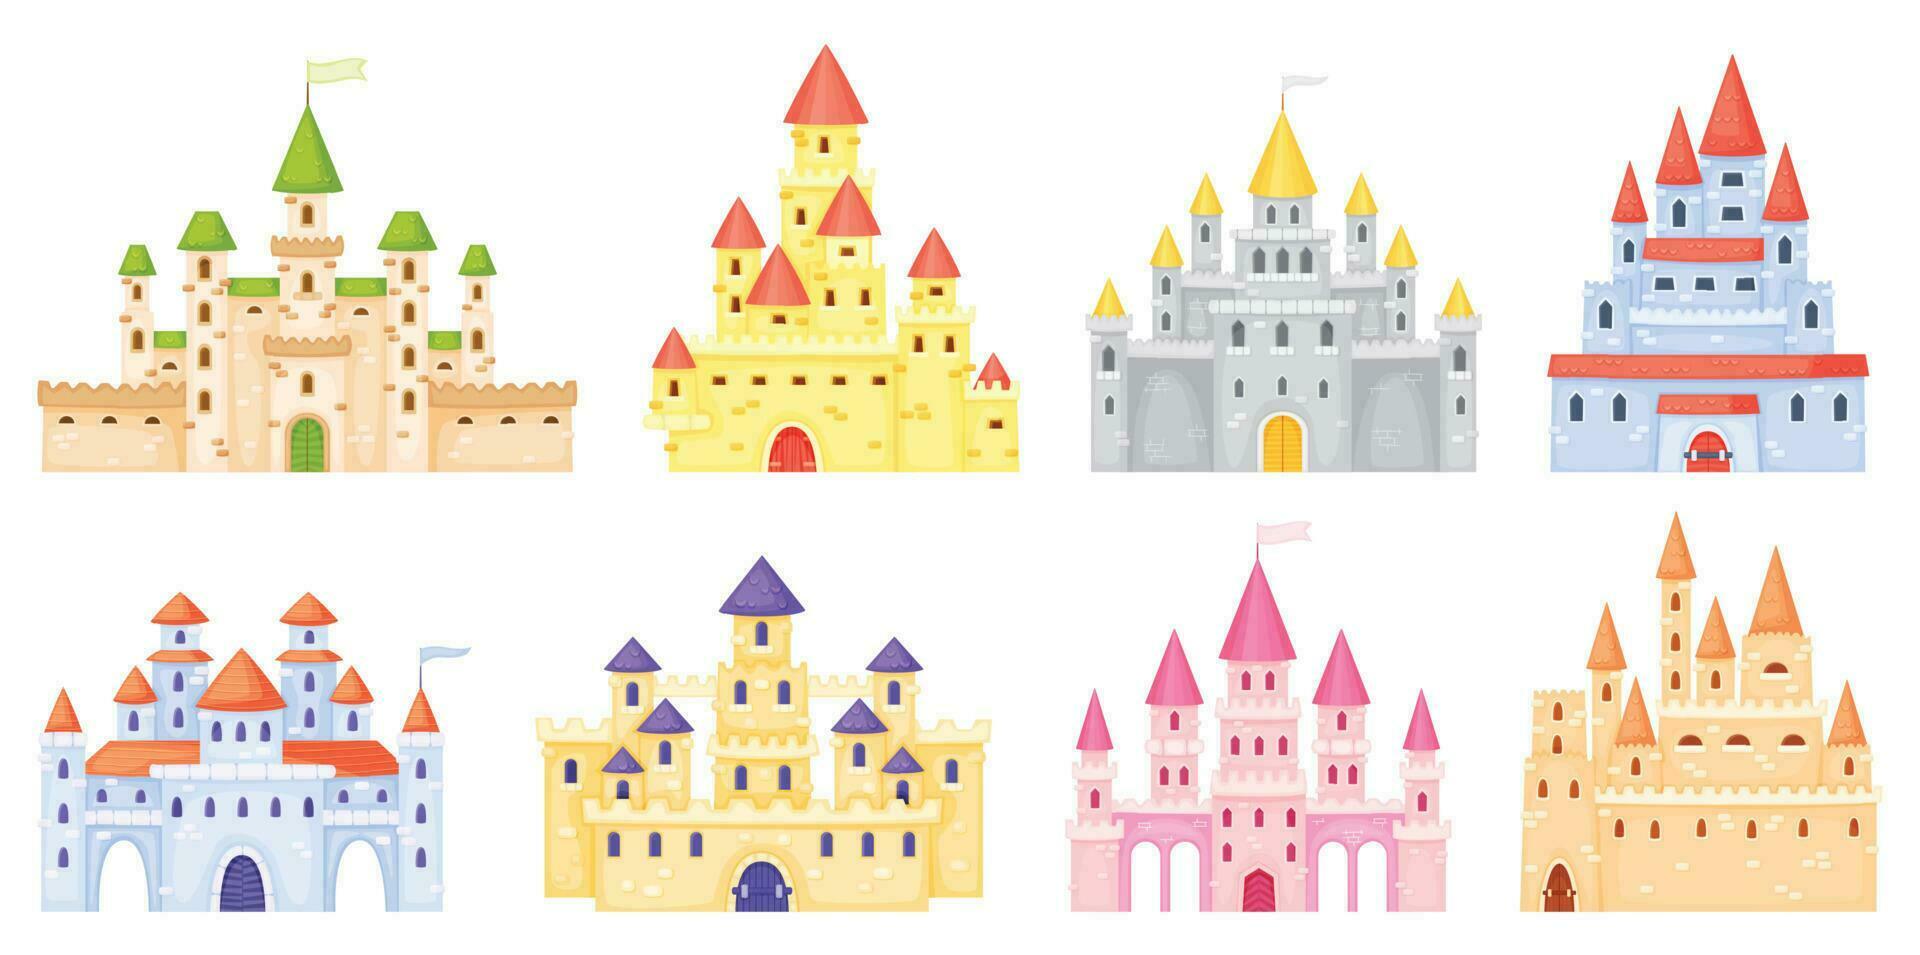 dibujos animados medieval castillos, cuento de hadas princesa castillo torres fantasía Reino magia palacio, Rey fortaleza, gótico mansión exterior vector conjunto